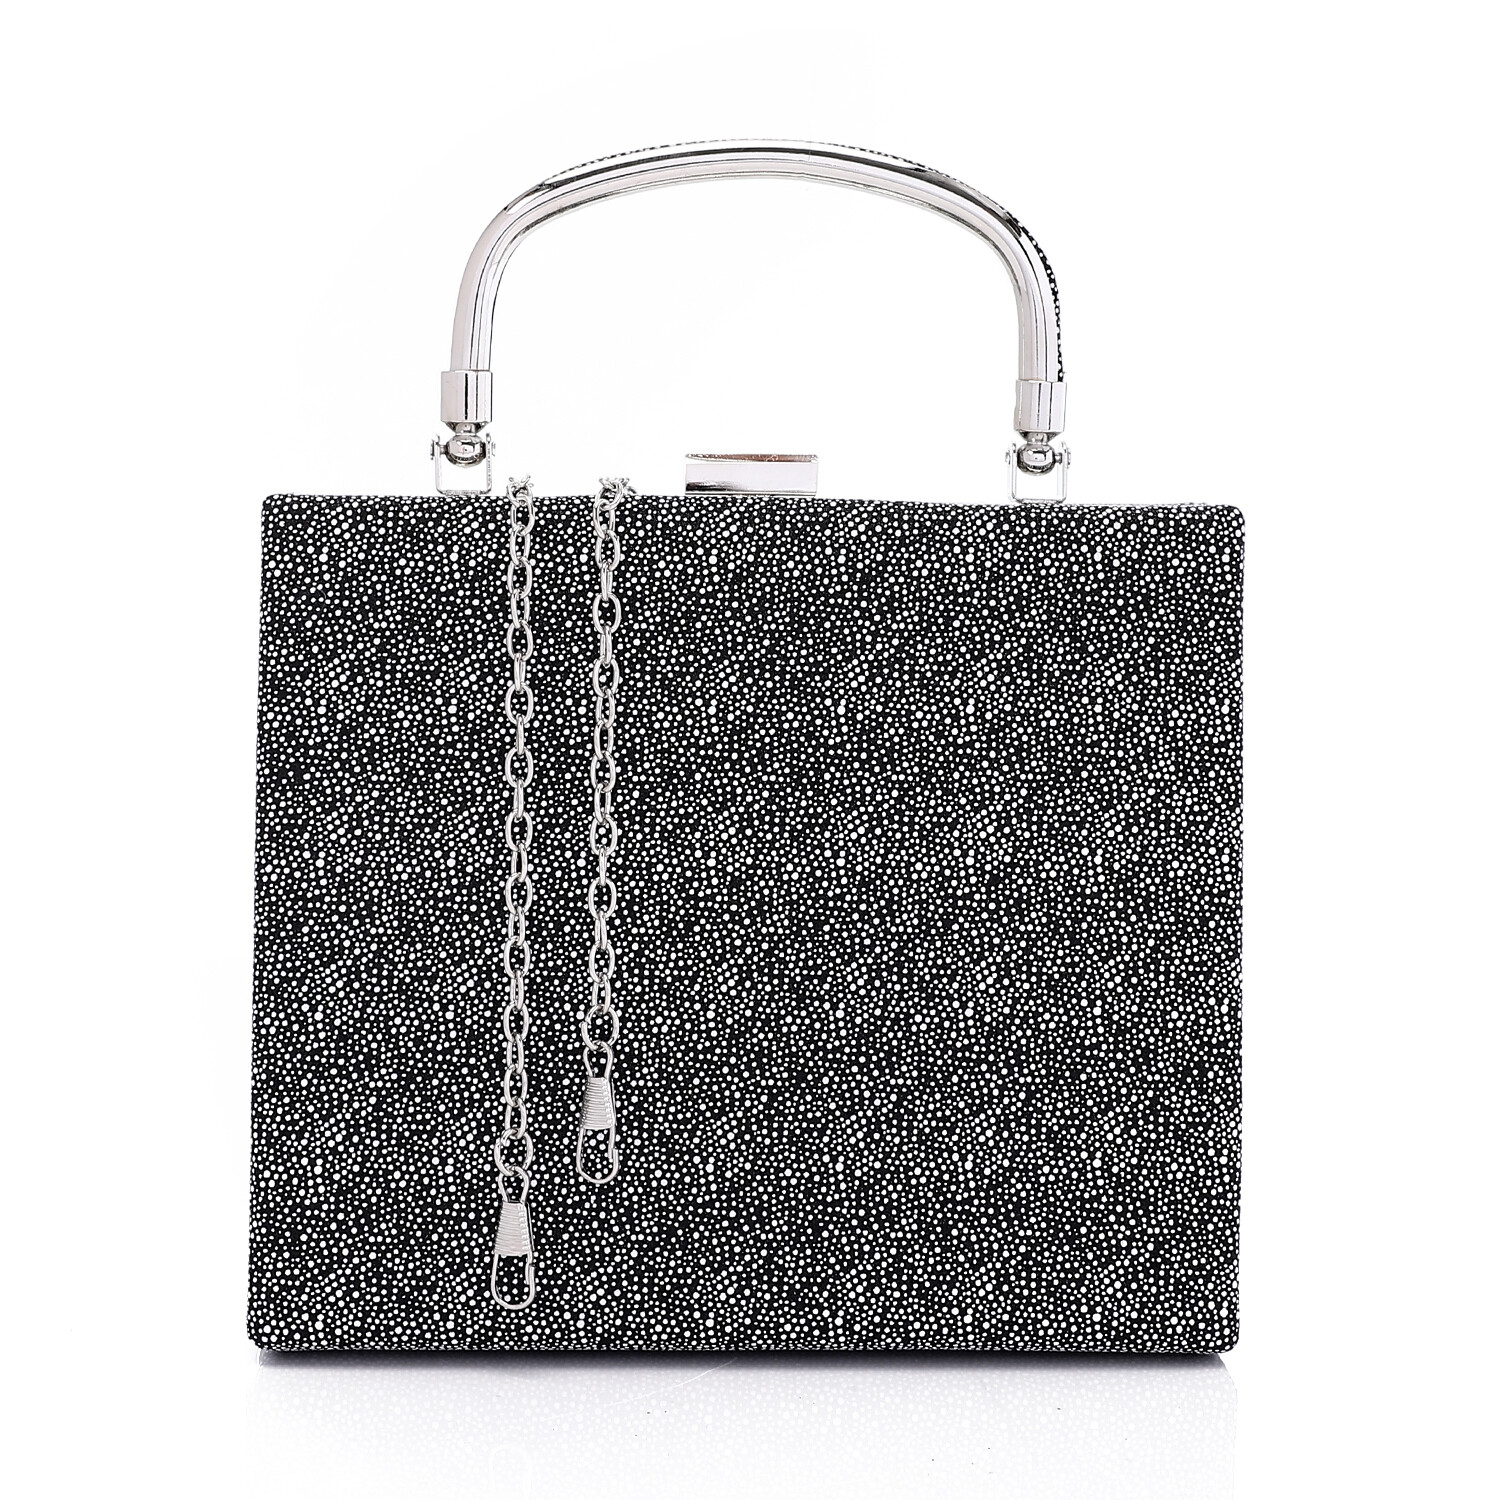 Press Button Closure Glittery Handbag - Black 4995